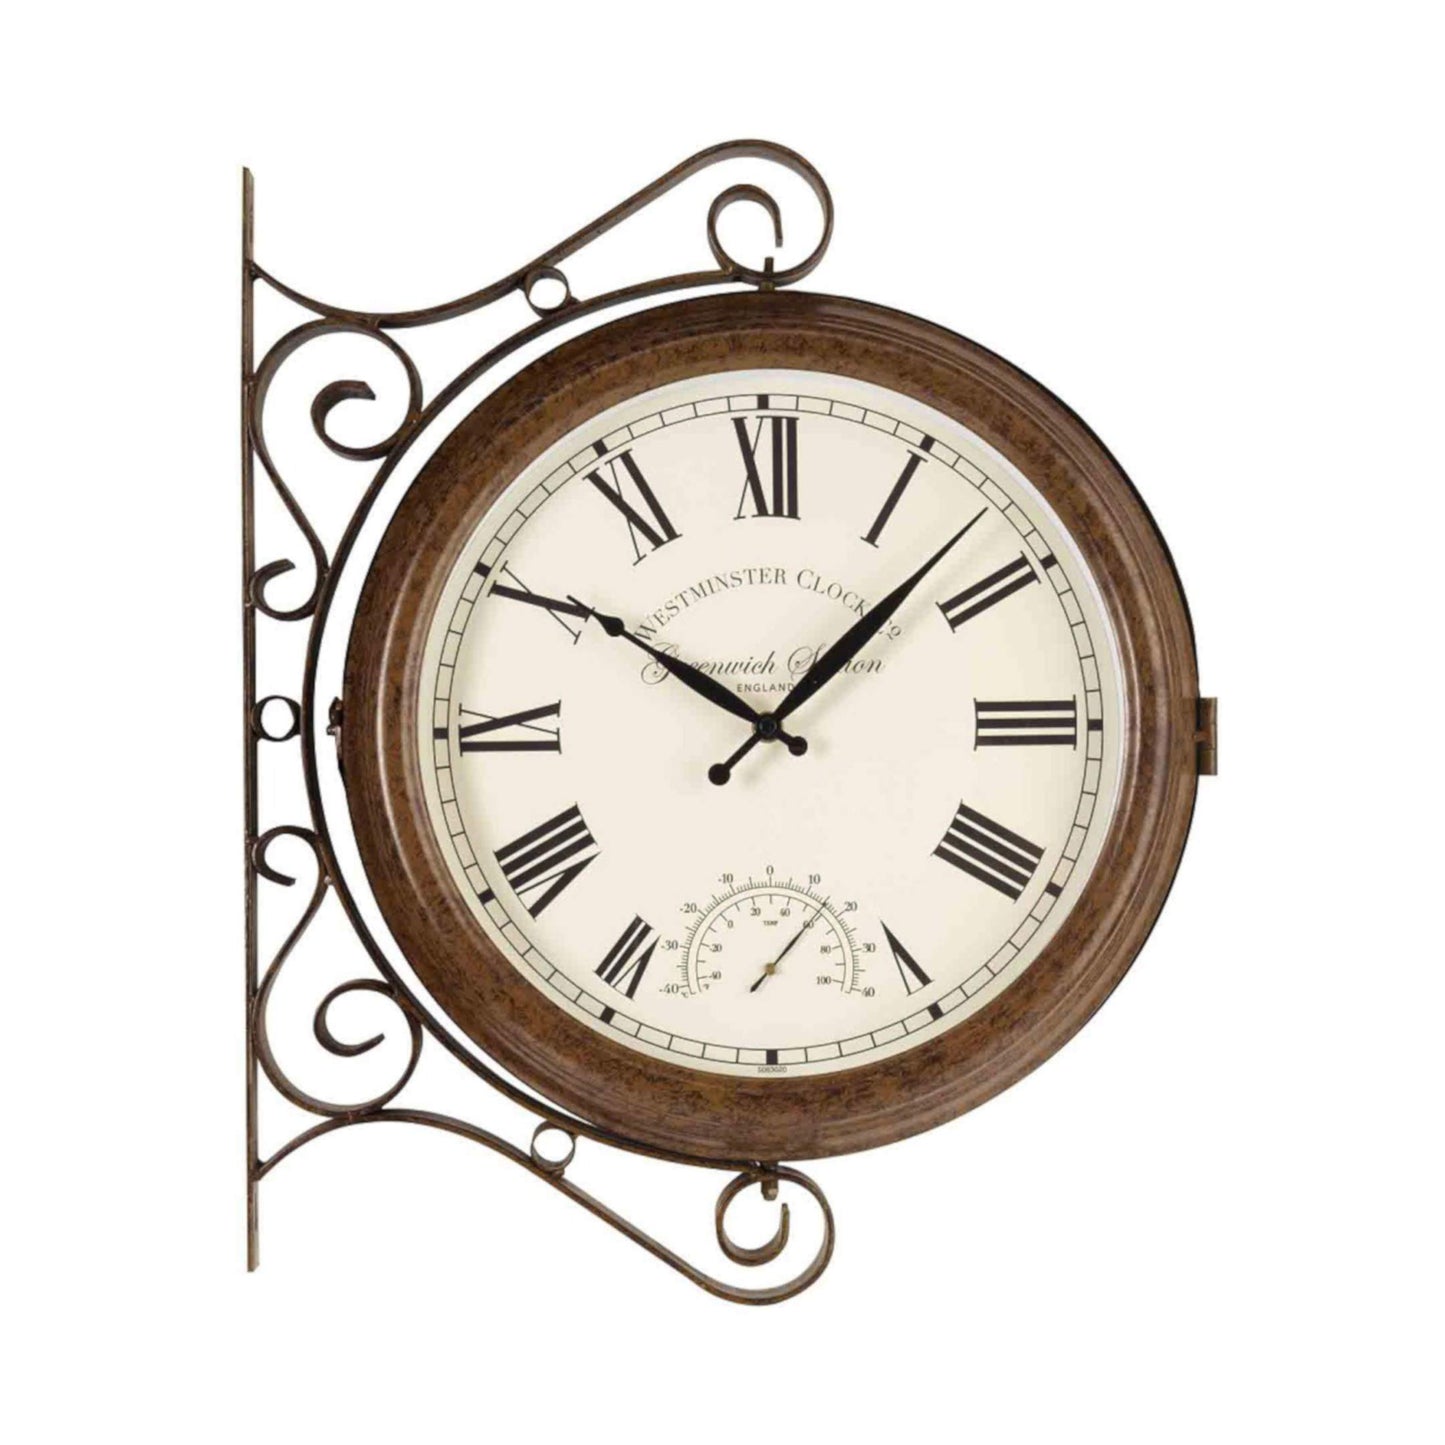 Staničné hodiny ⌀ 38cm s teplomerom ⸱ Greenwich